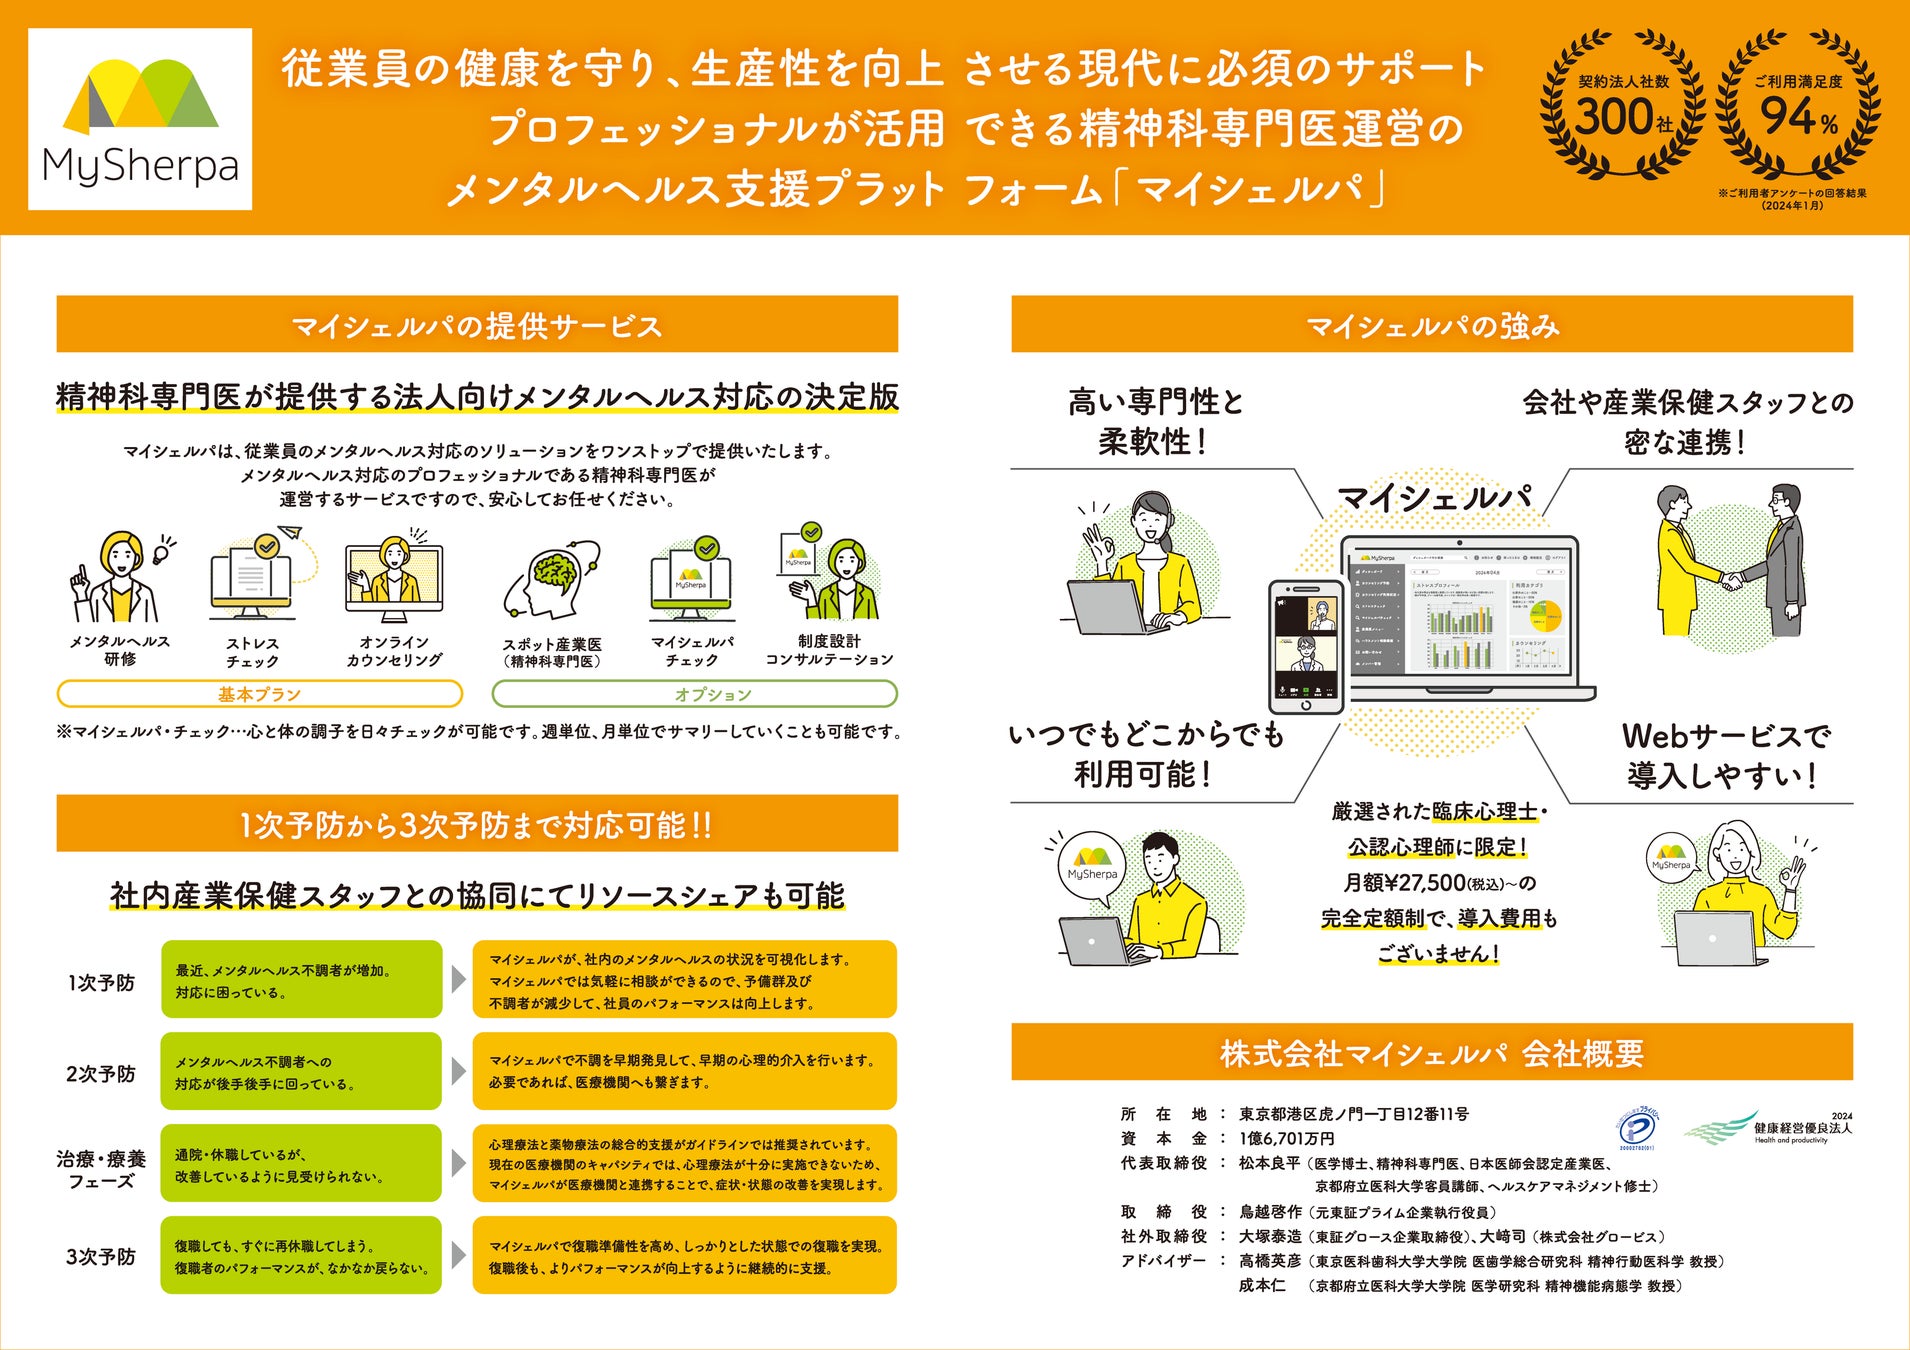 株式会社マイシェルパが「第97回日本産業衛生学会」に「法人向けメンタルヘルス支援サービス」を初出展